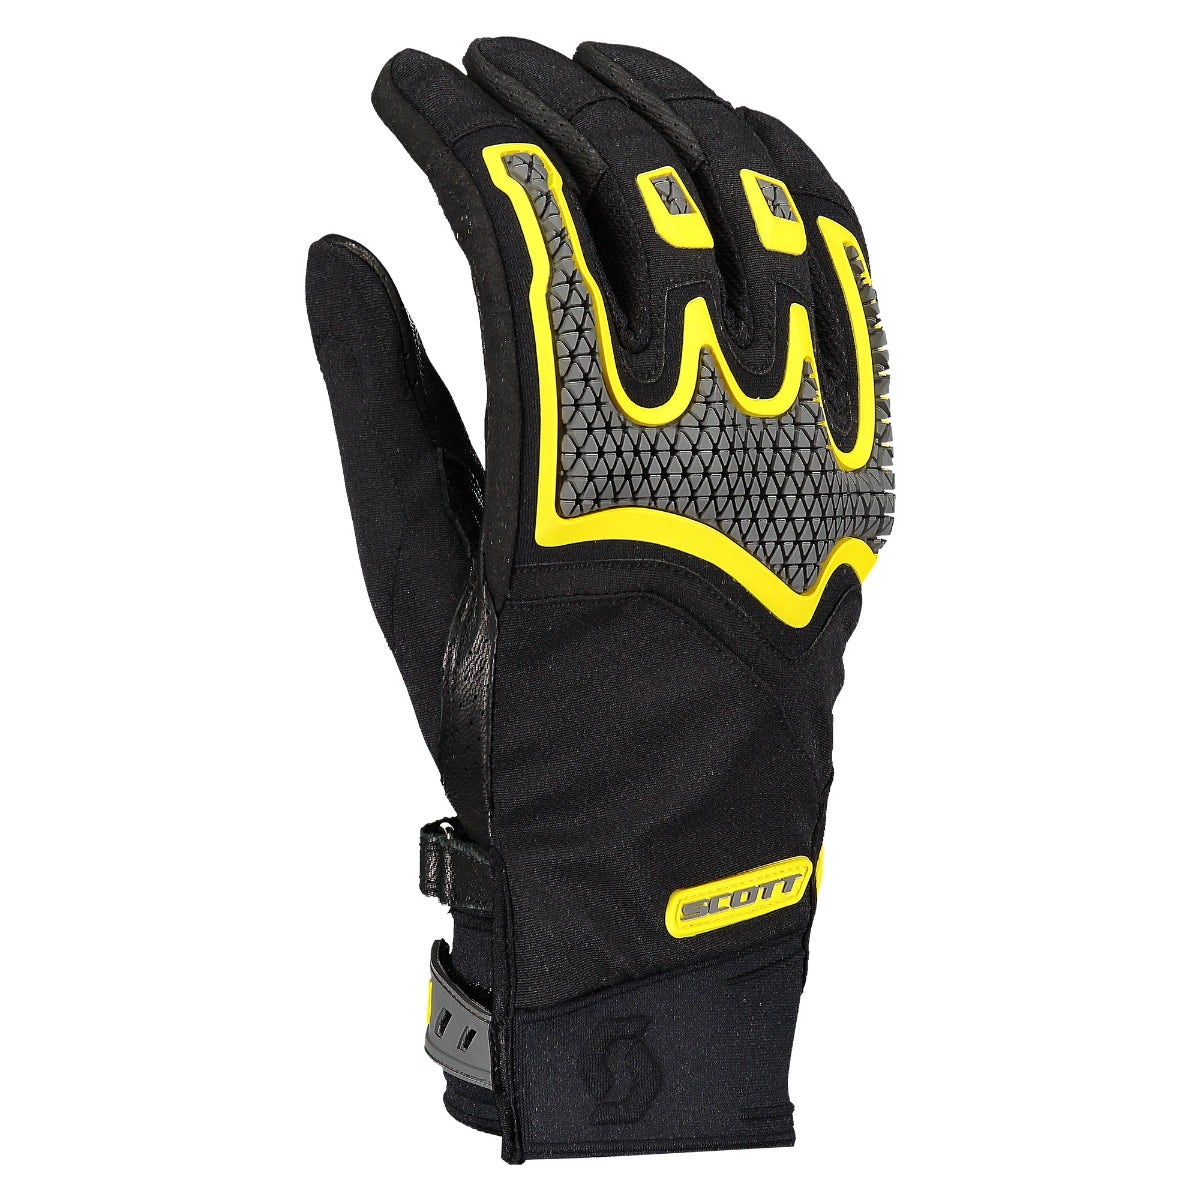 Scott Dualraid Glove Black/Yellow